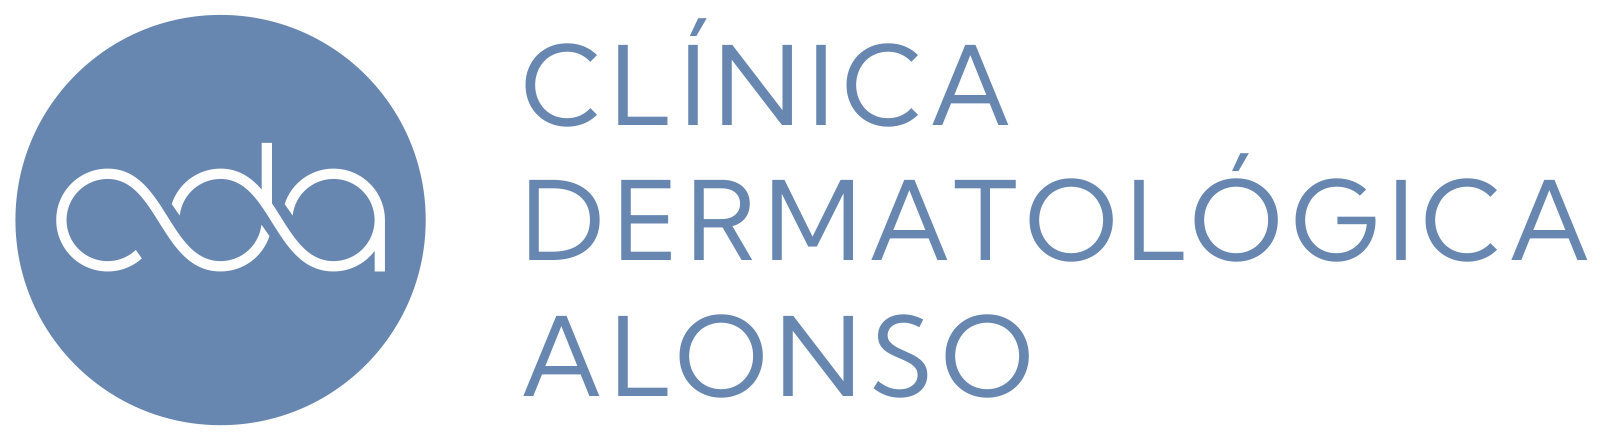 Clínica Dermatológica Alonso